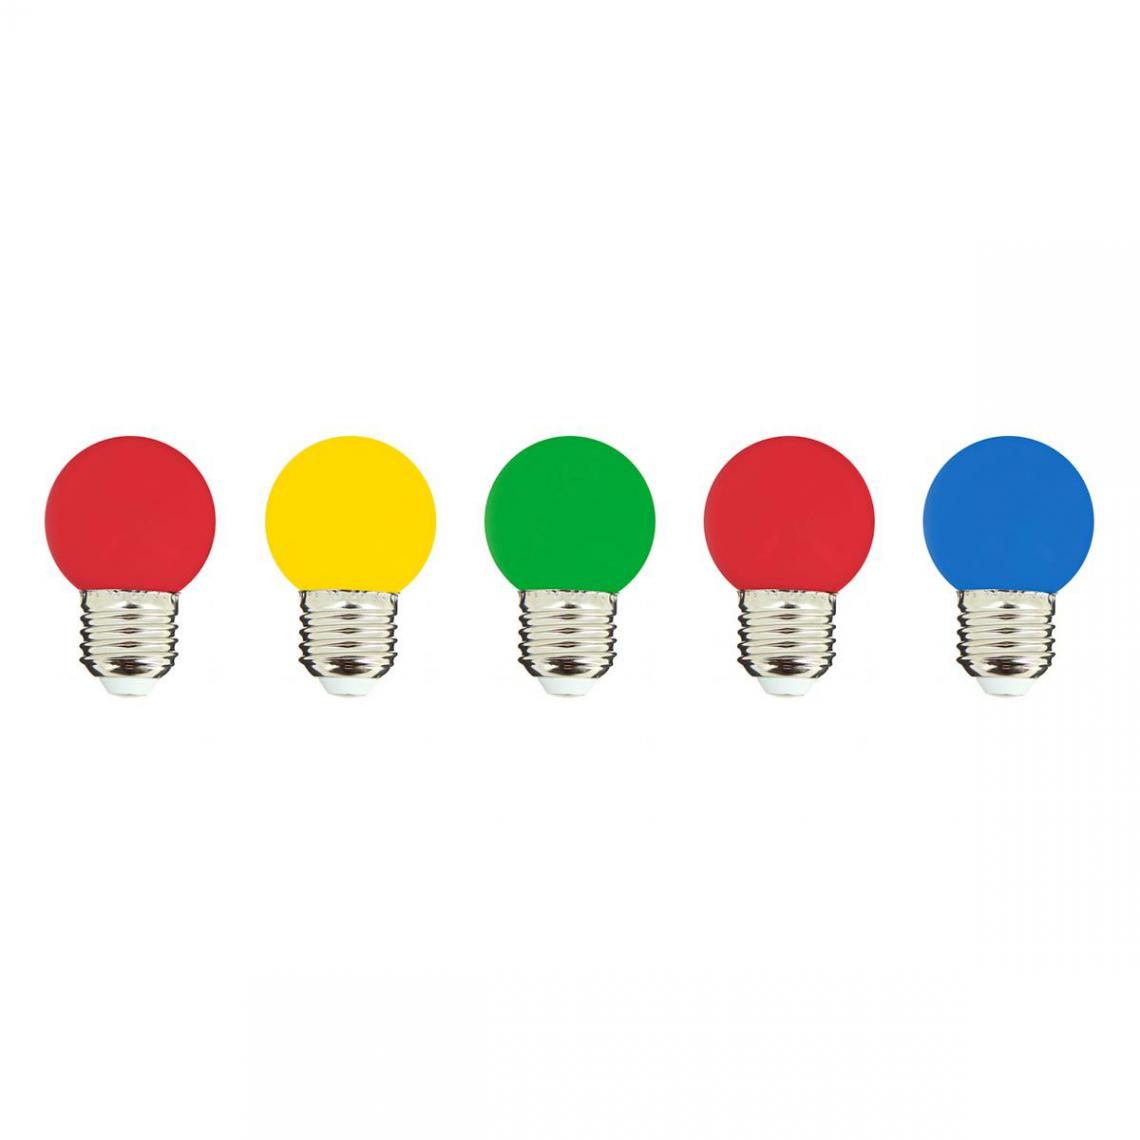 Lumisky - Lot de 5 ampoules compatible guirlande PARTY BULB COLOR Multicolore Plastique E27 - Ampoules LED